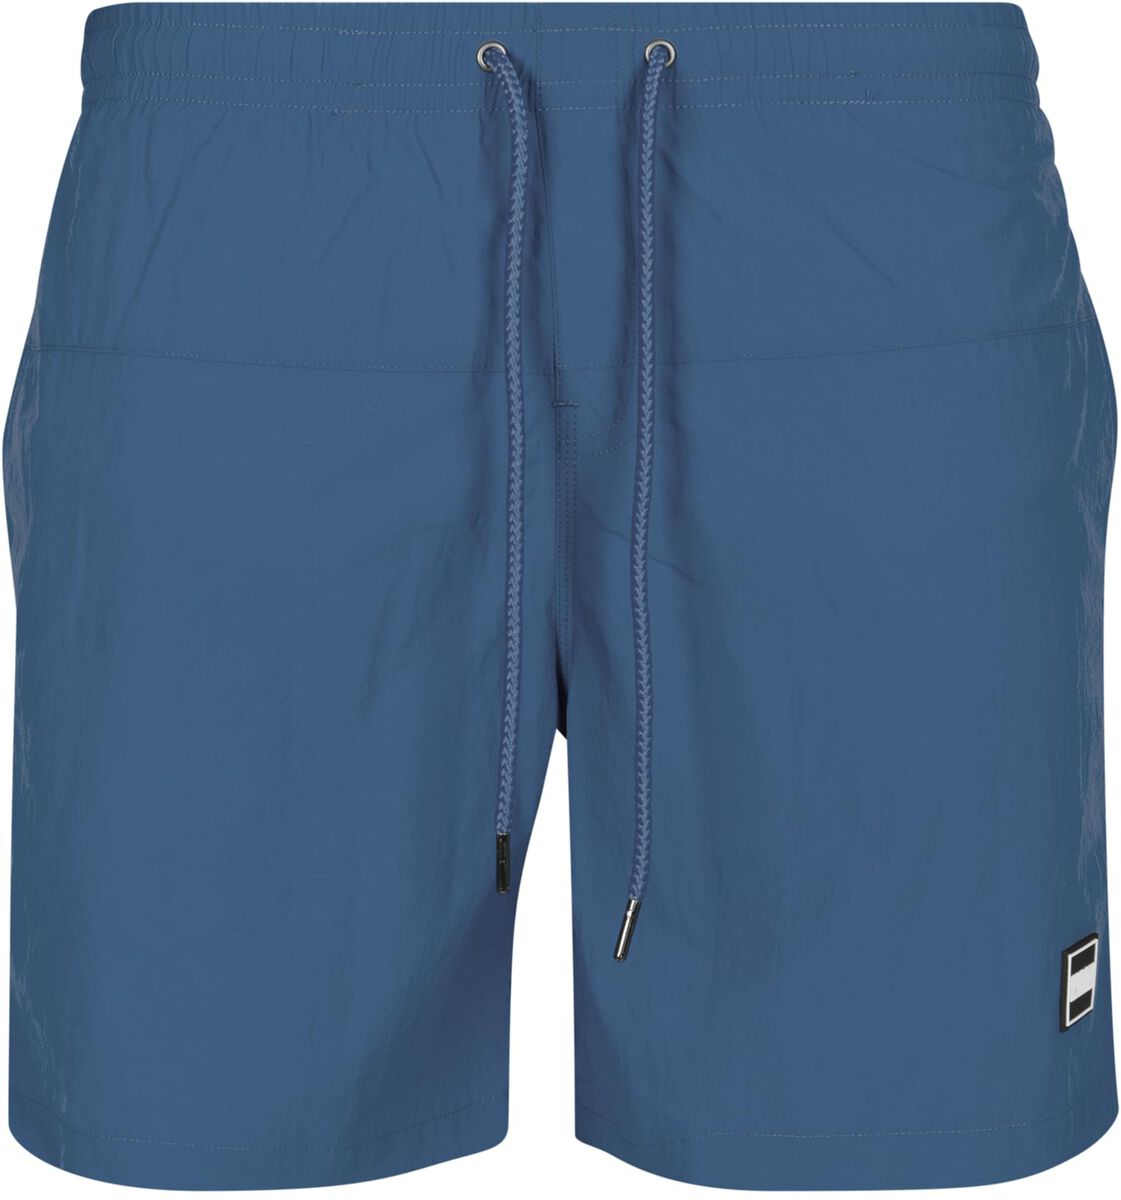 Urban Classics Badeshort - Block Swim Shorts - S bis 4XL - für Männer - Größe 3XL - blau